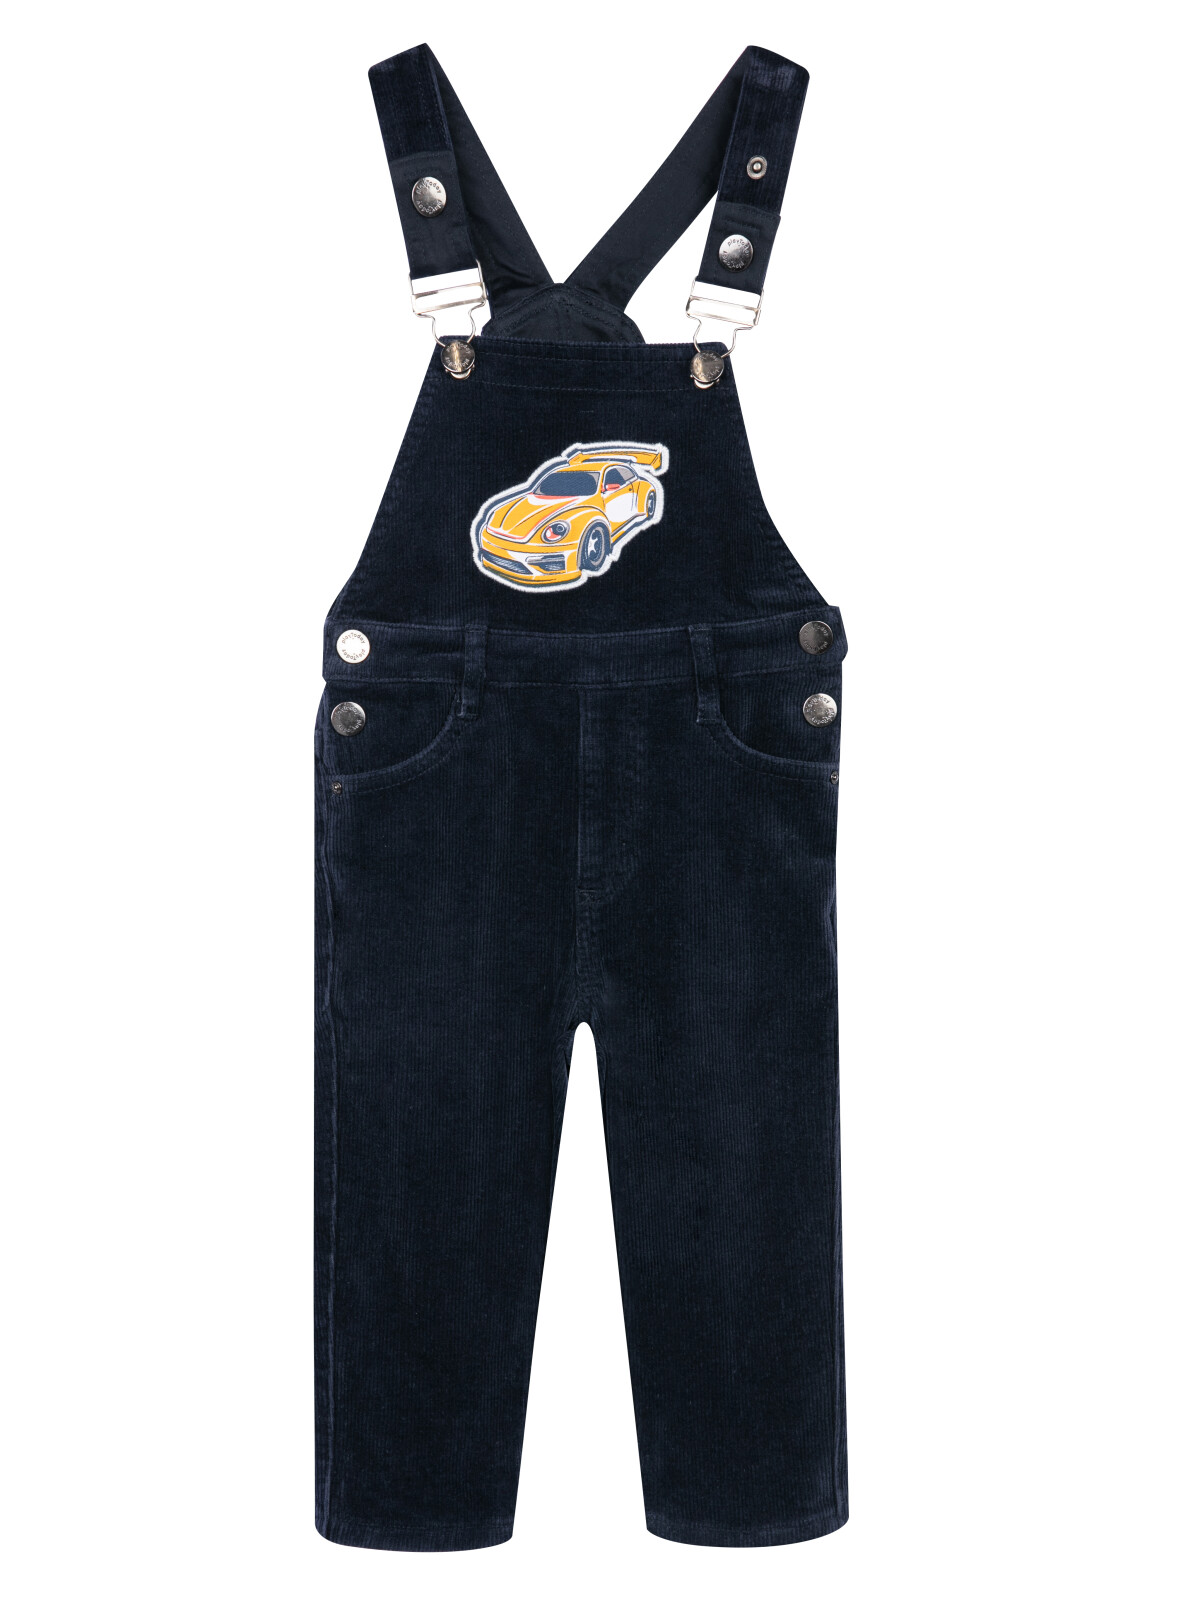 Полукомбинезон детский текстильный джинсовый утепленный флисом для мальчиков PlayToday, 92 полукомбинезон текстильный джинсовый утепленный флисом для мальчиков